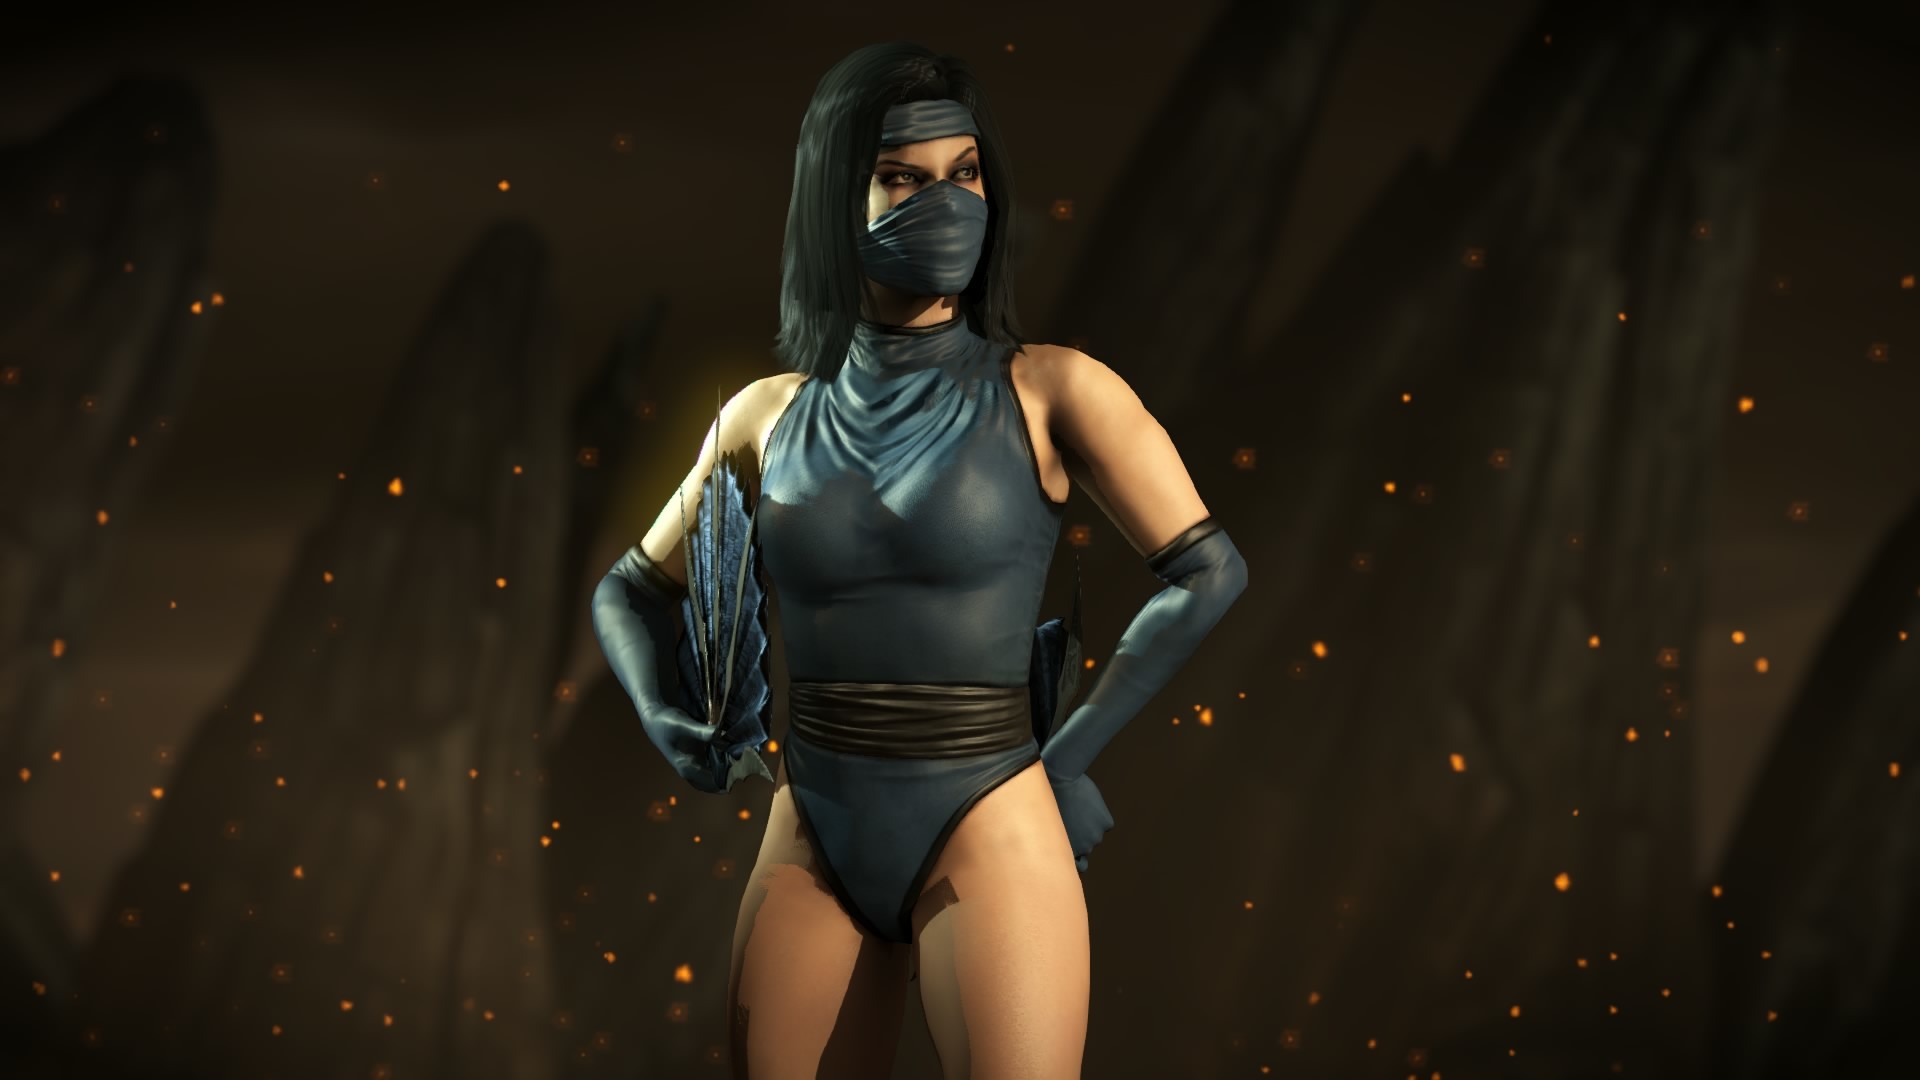 Mortal Kombat X Kitana Klassic costume by Kabukiart157